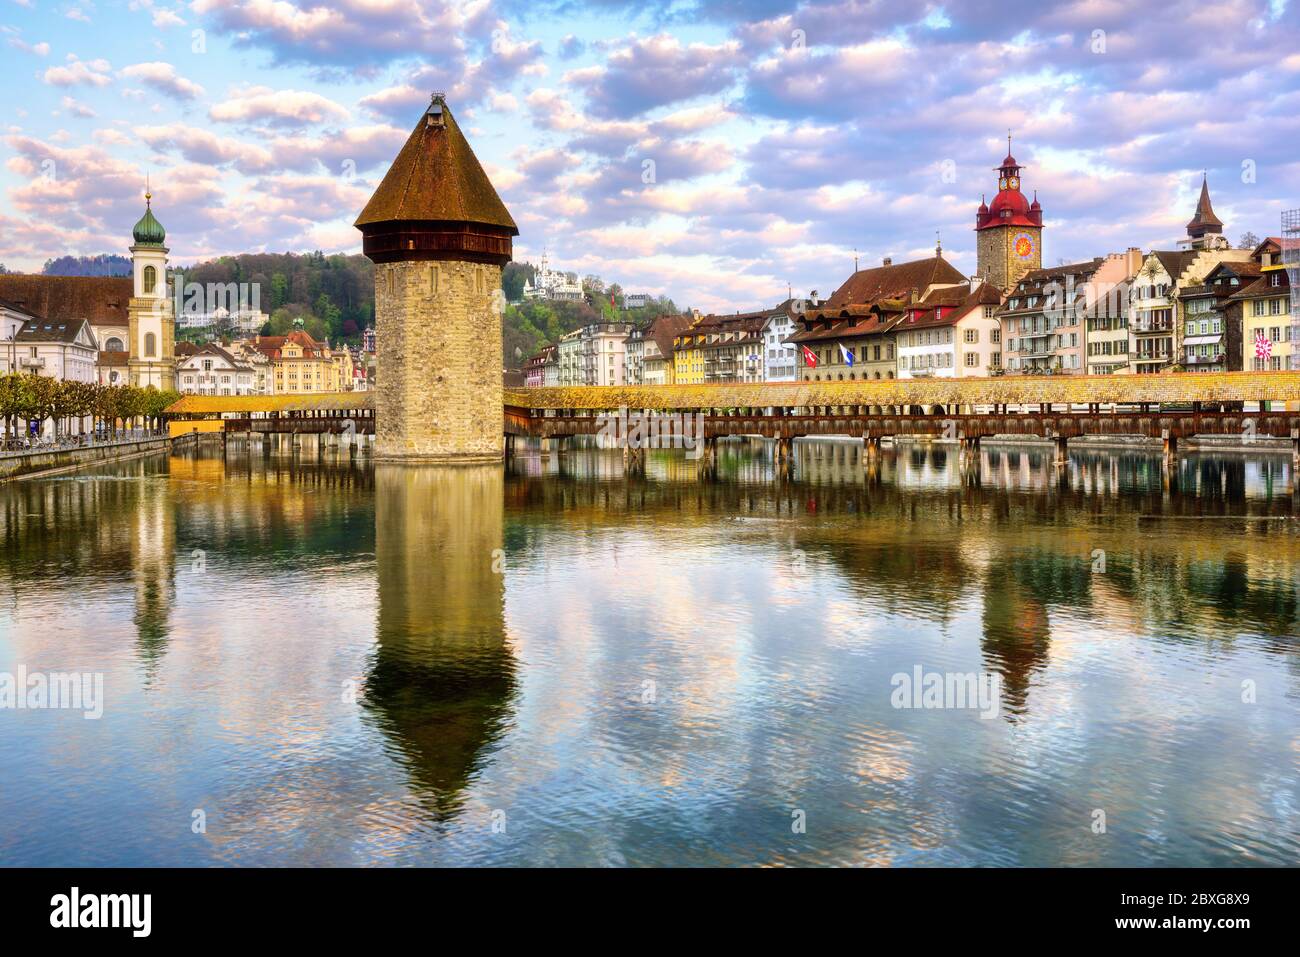 Lucerna, Svizzera, vista della città vecchia con il ponte della Cappella in legno, un simbolo storico della città Foto Stock